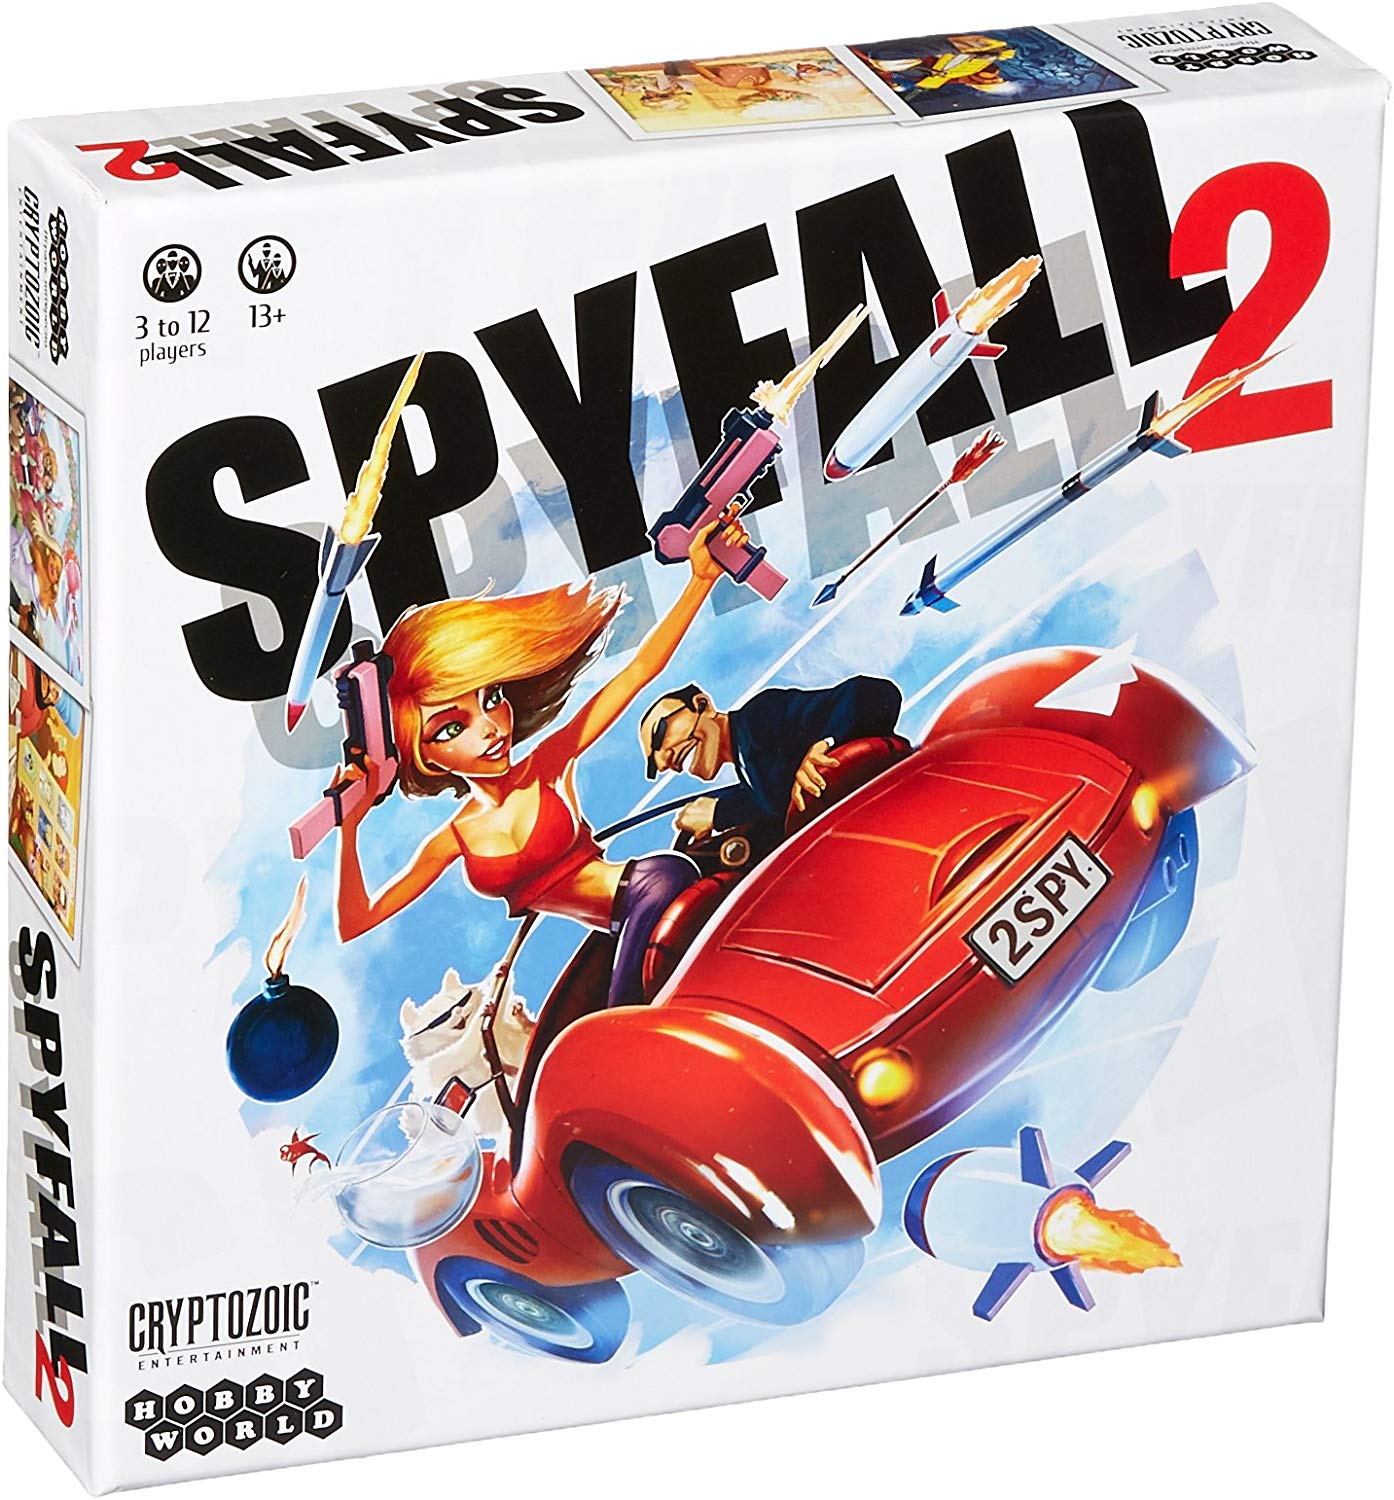 სამაგიდო თამაში სფაიფოლ 2 (Spyfall 2) სამაგიდო თამაში